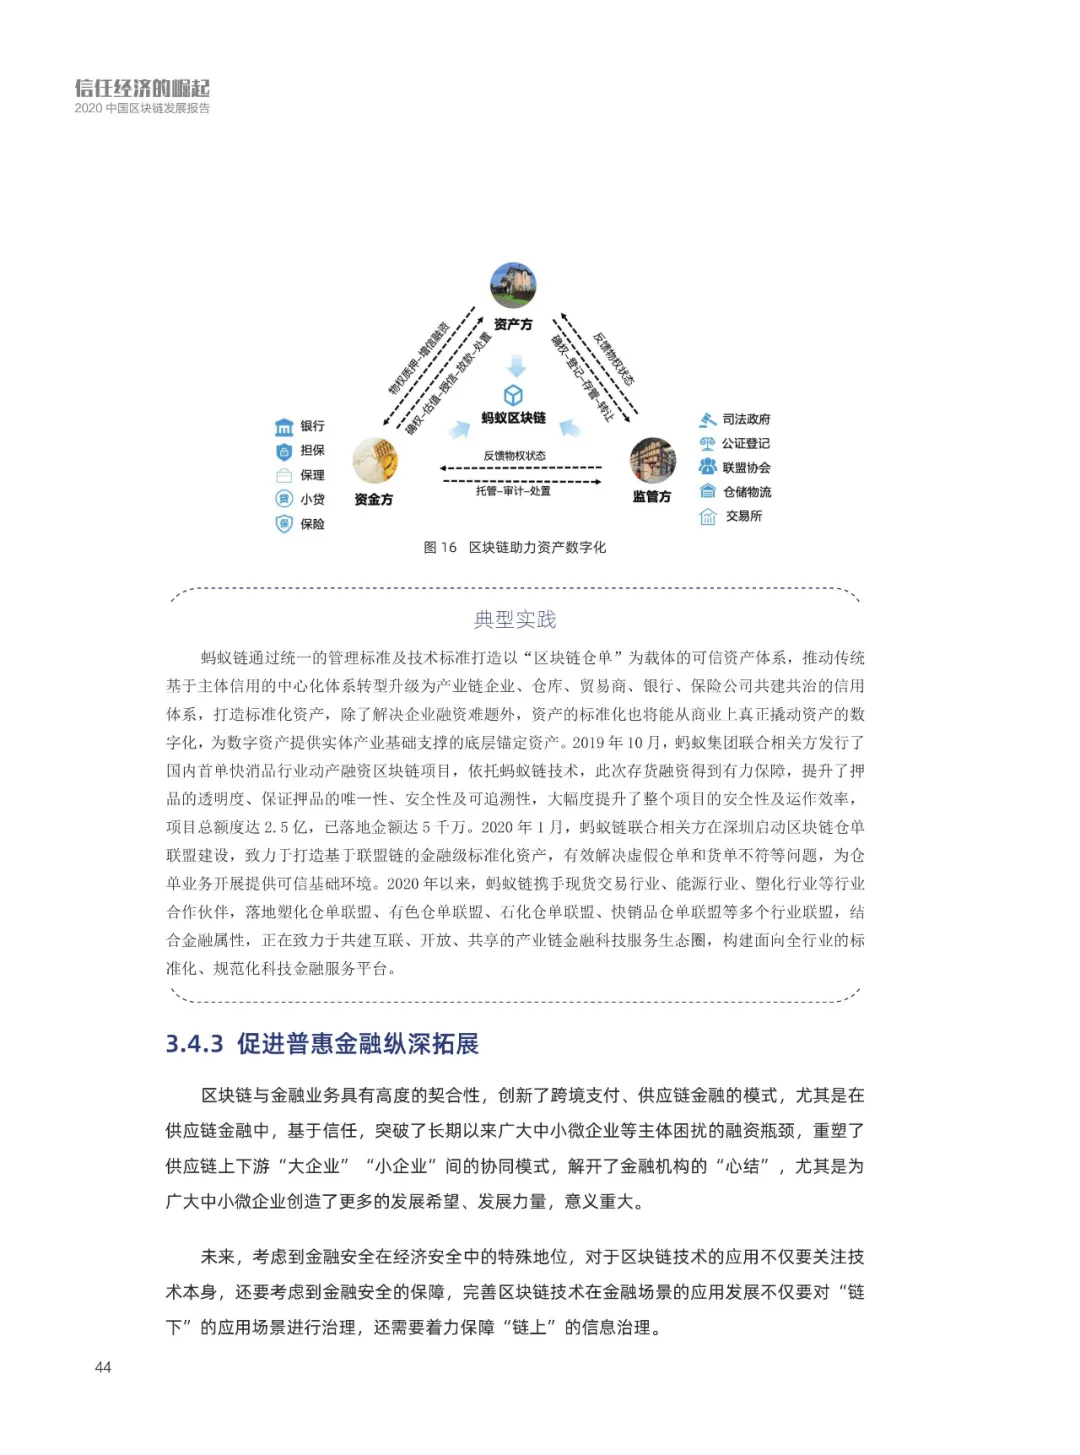 信任经济的崛起——2020中国区块链发展报告_加密算法_45